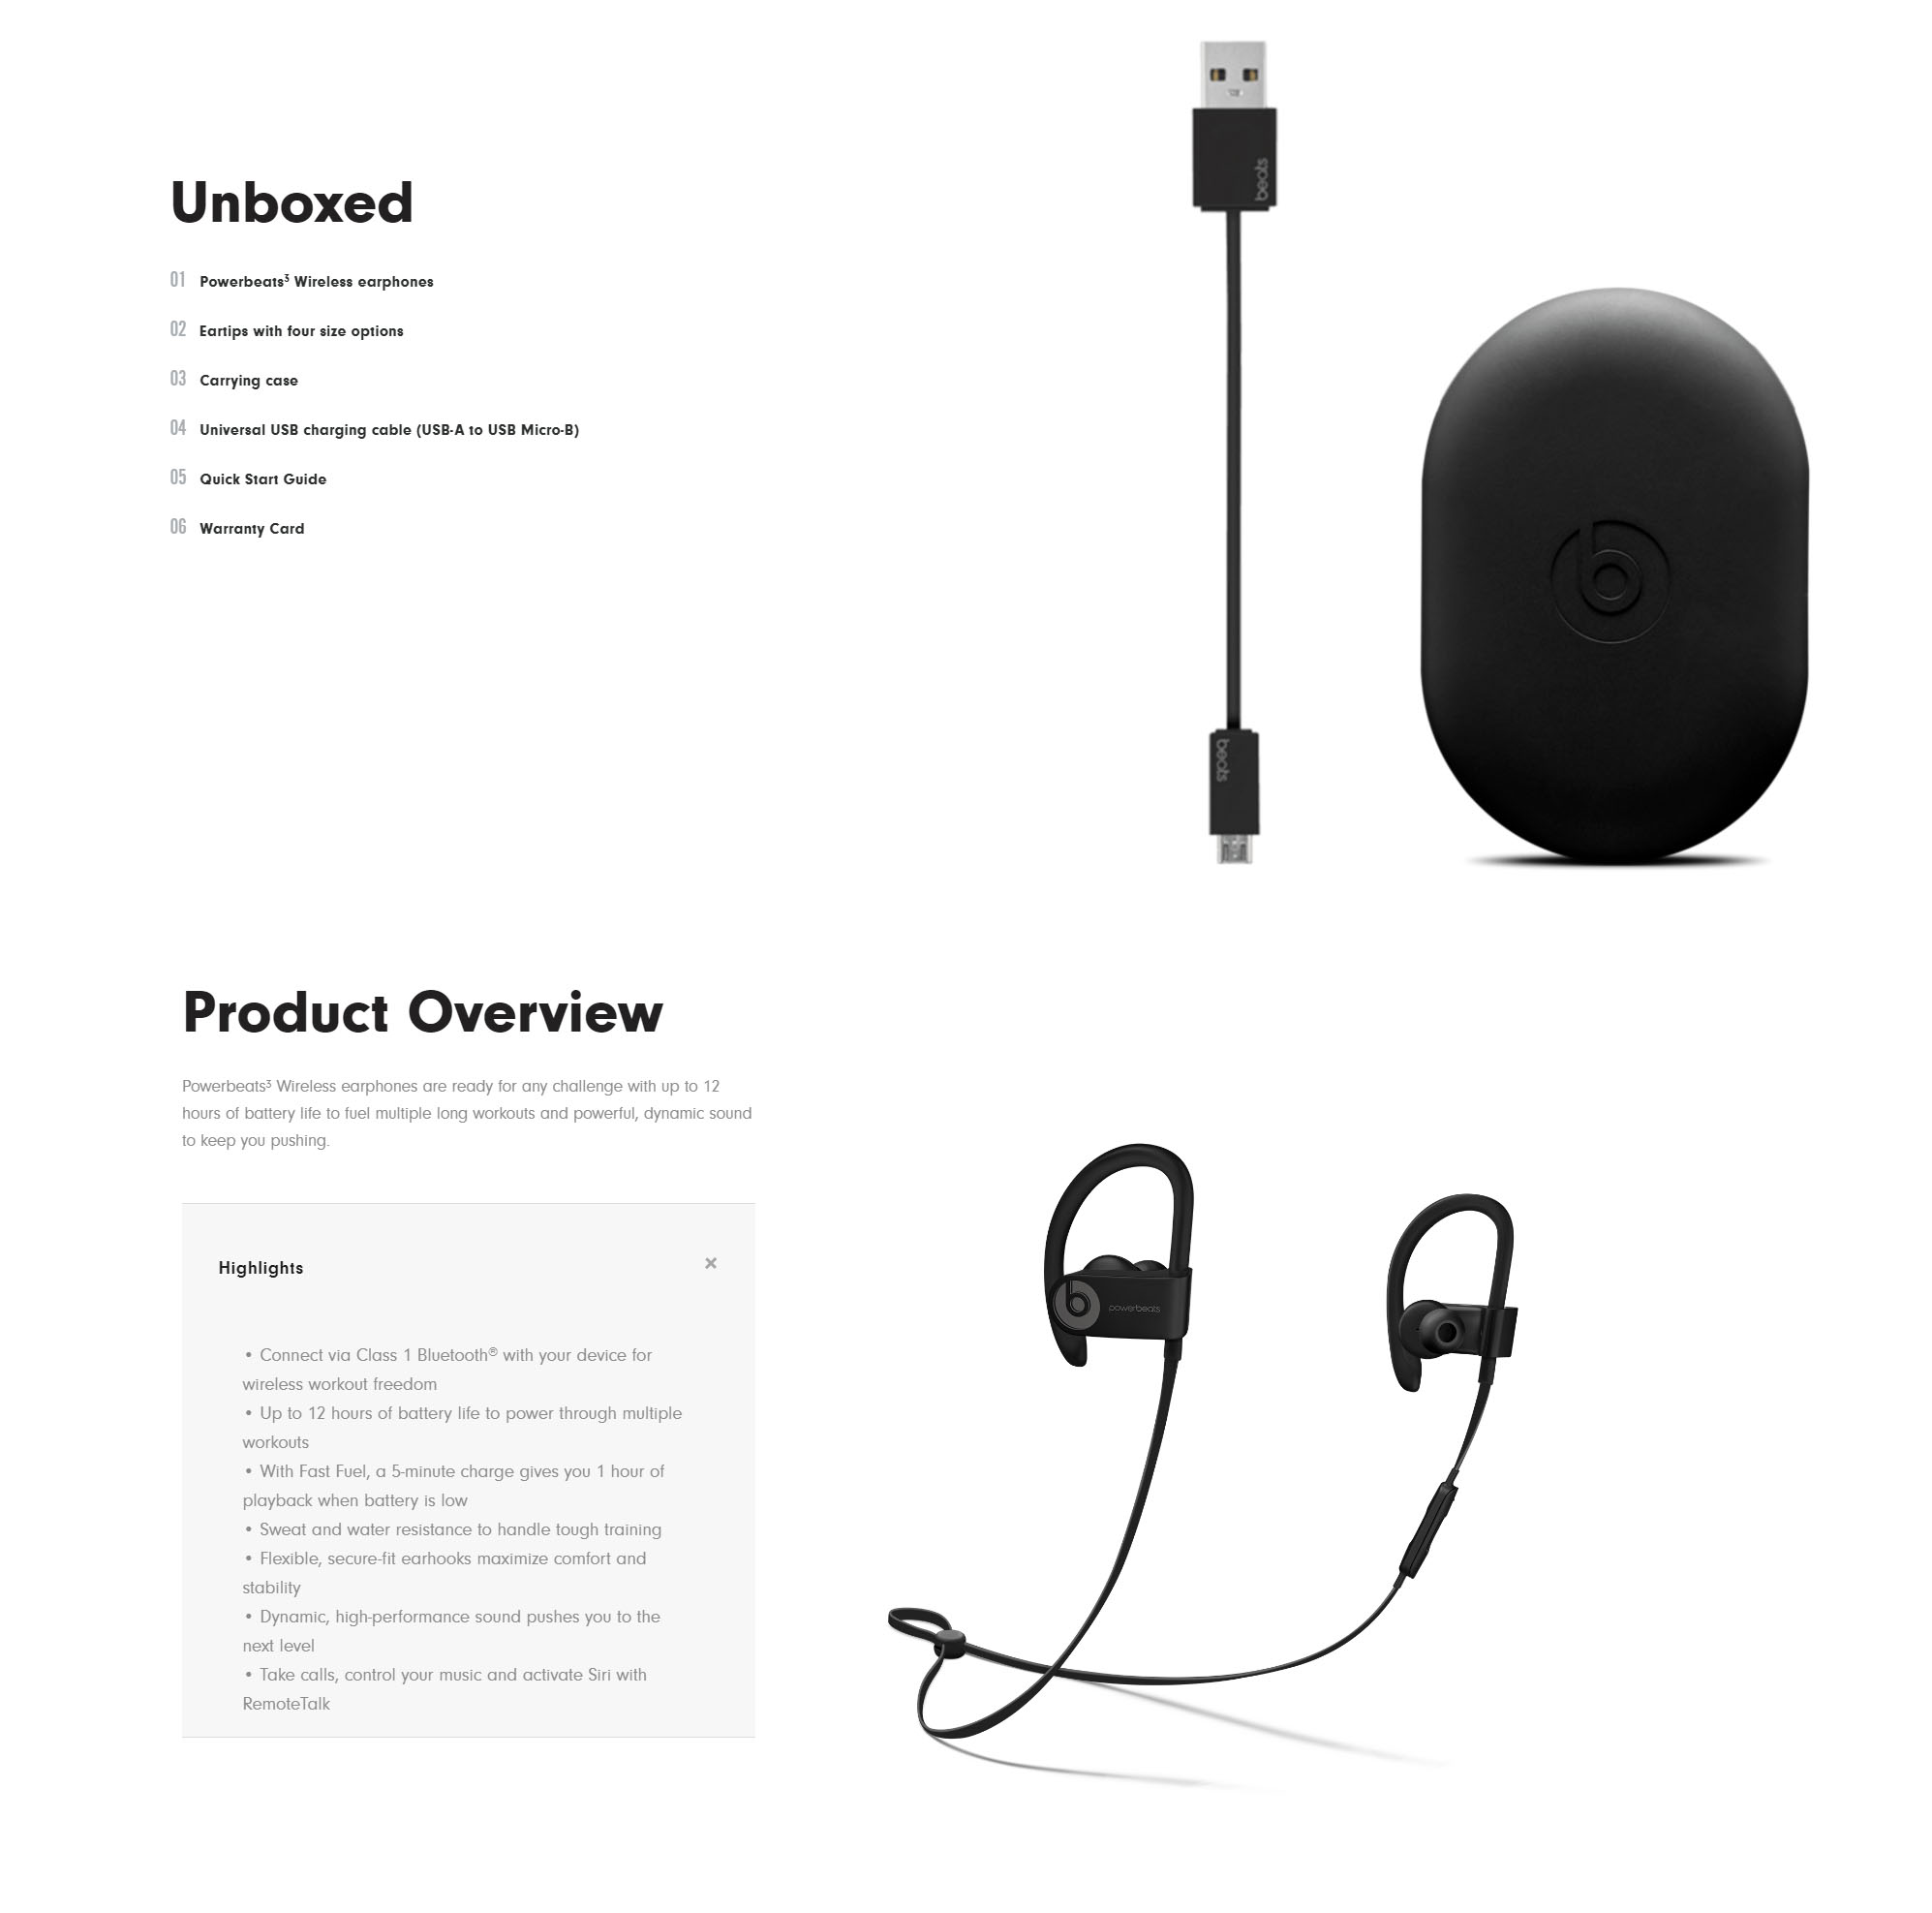 powerbeats3 wireless earphones warranty